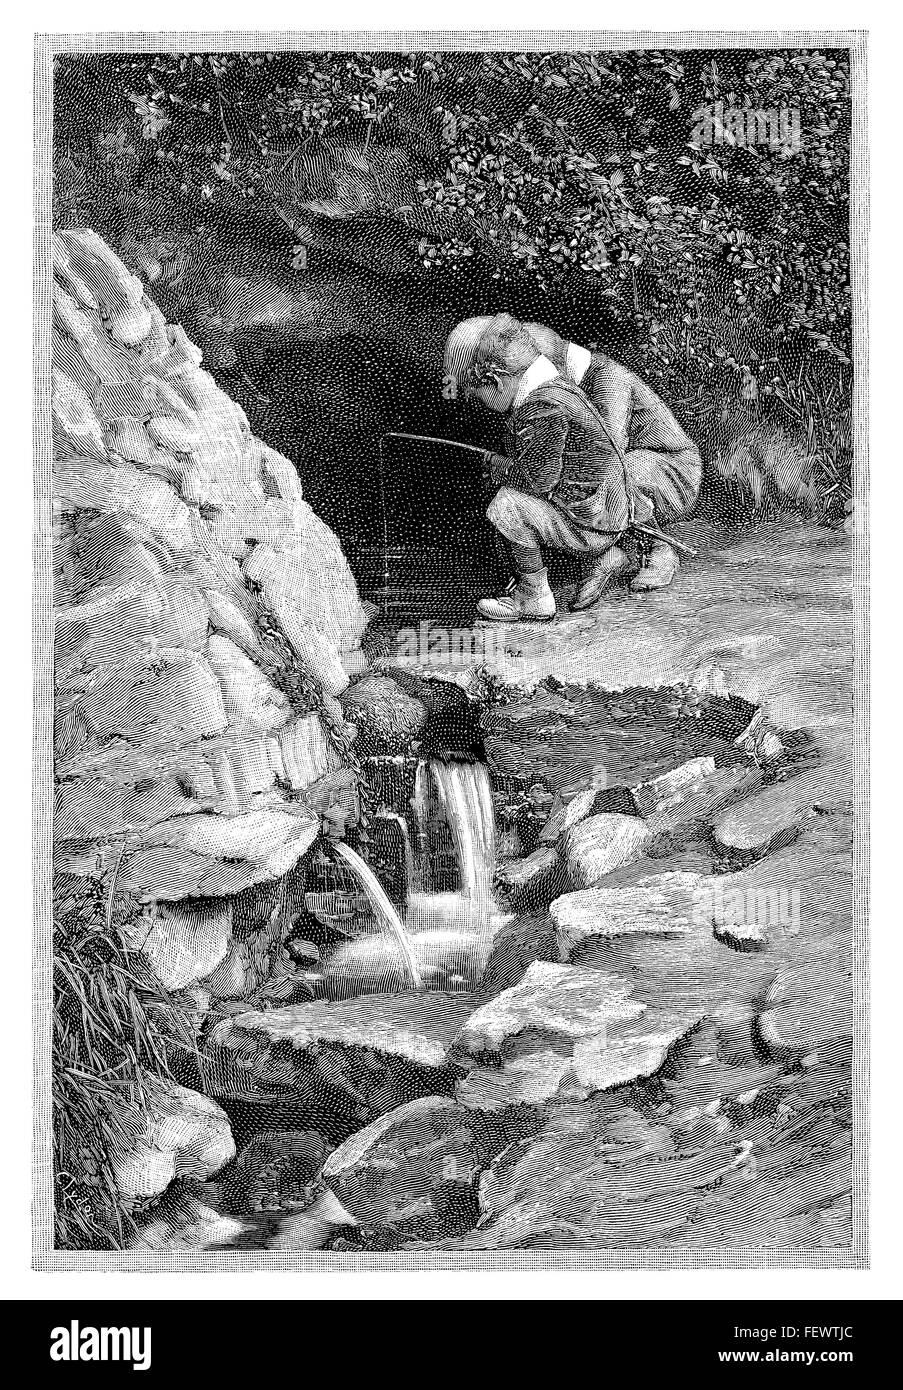 Gravure en noir et blanc de 1894 représentant deux enfants pêche dans un ruisseau. Banque D'Images